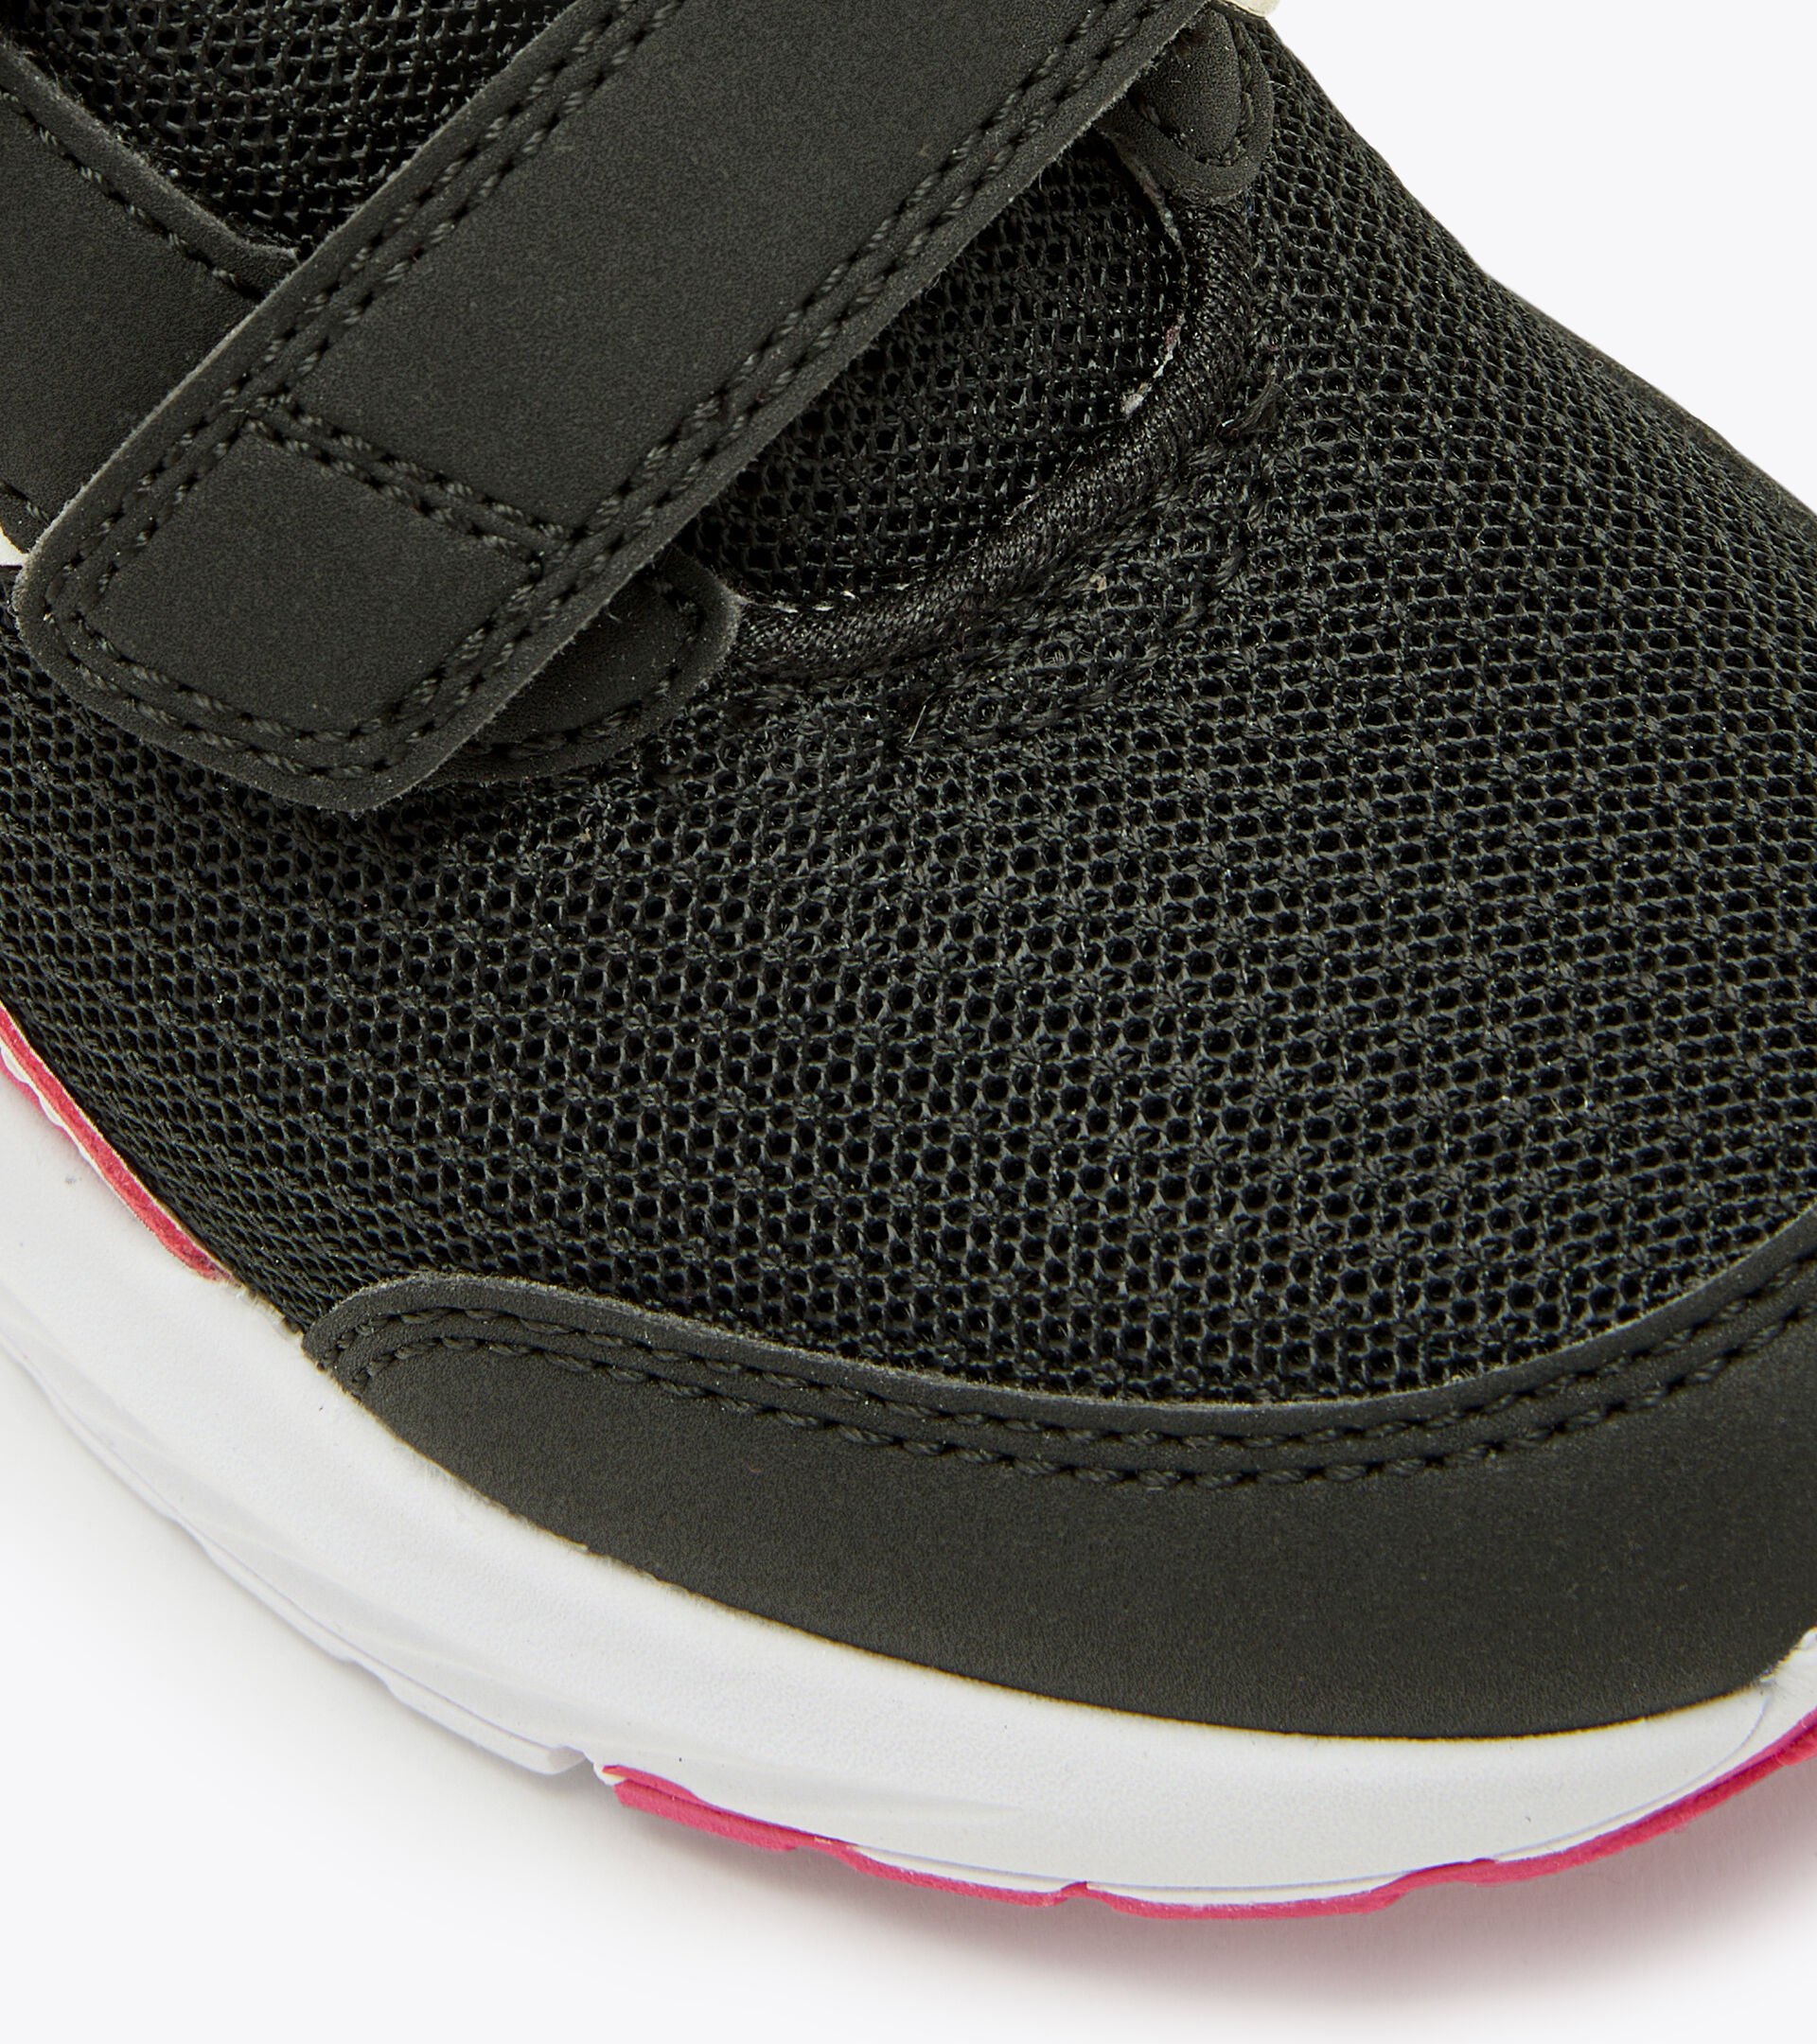 Junior running shoes - Gender Neutral FALCON 3 JR V BLACK/PINK YARROW - Diadora